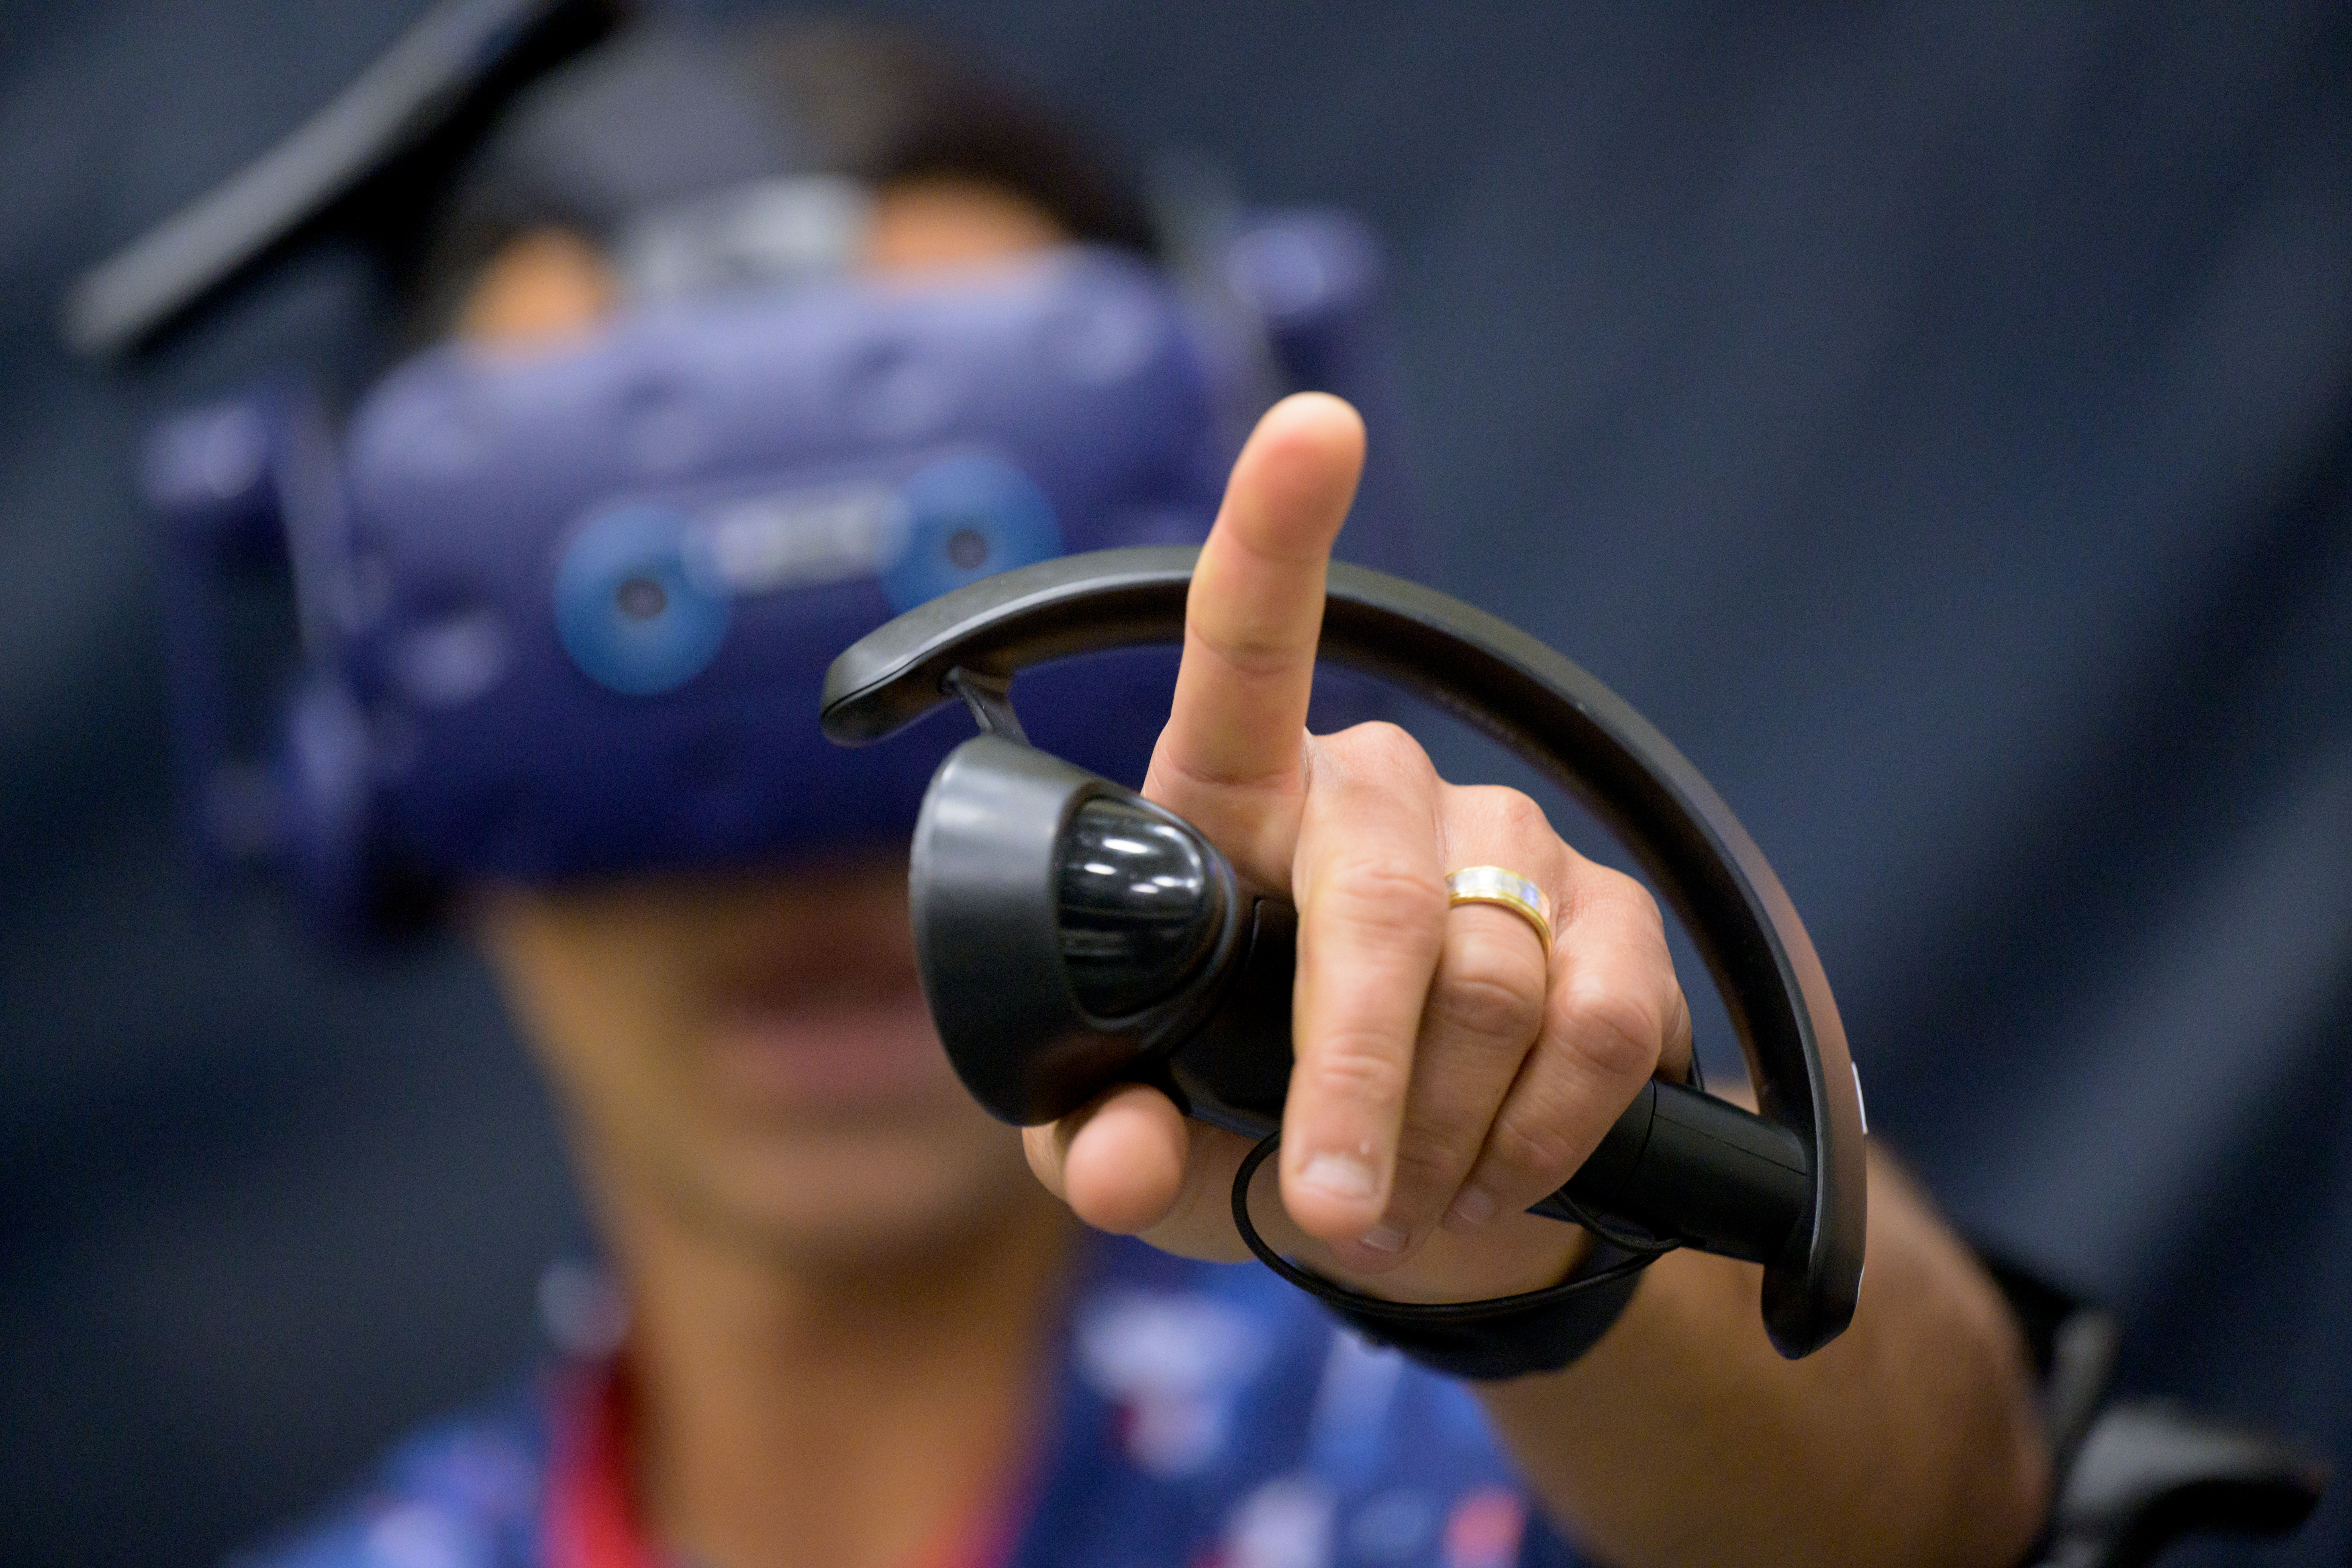 NASA Astronaut Raja Chari explores Gateway in virtual reality at the Virtual Reality Training Lab at NASA's Johnson Space Center.